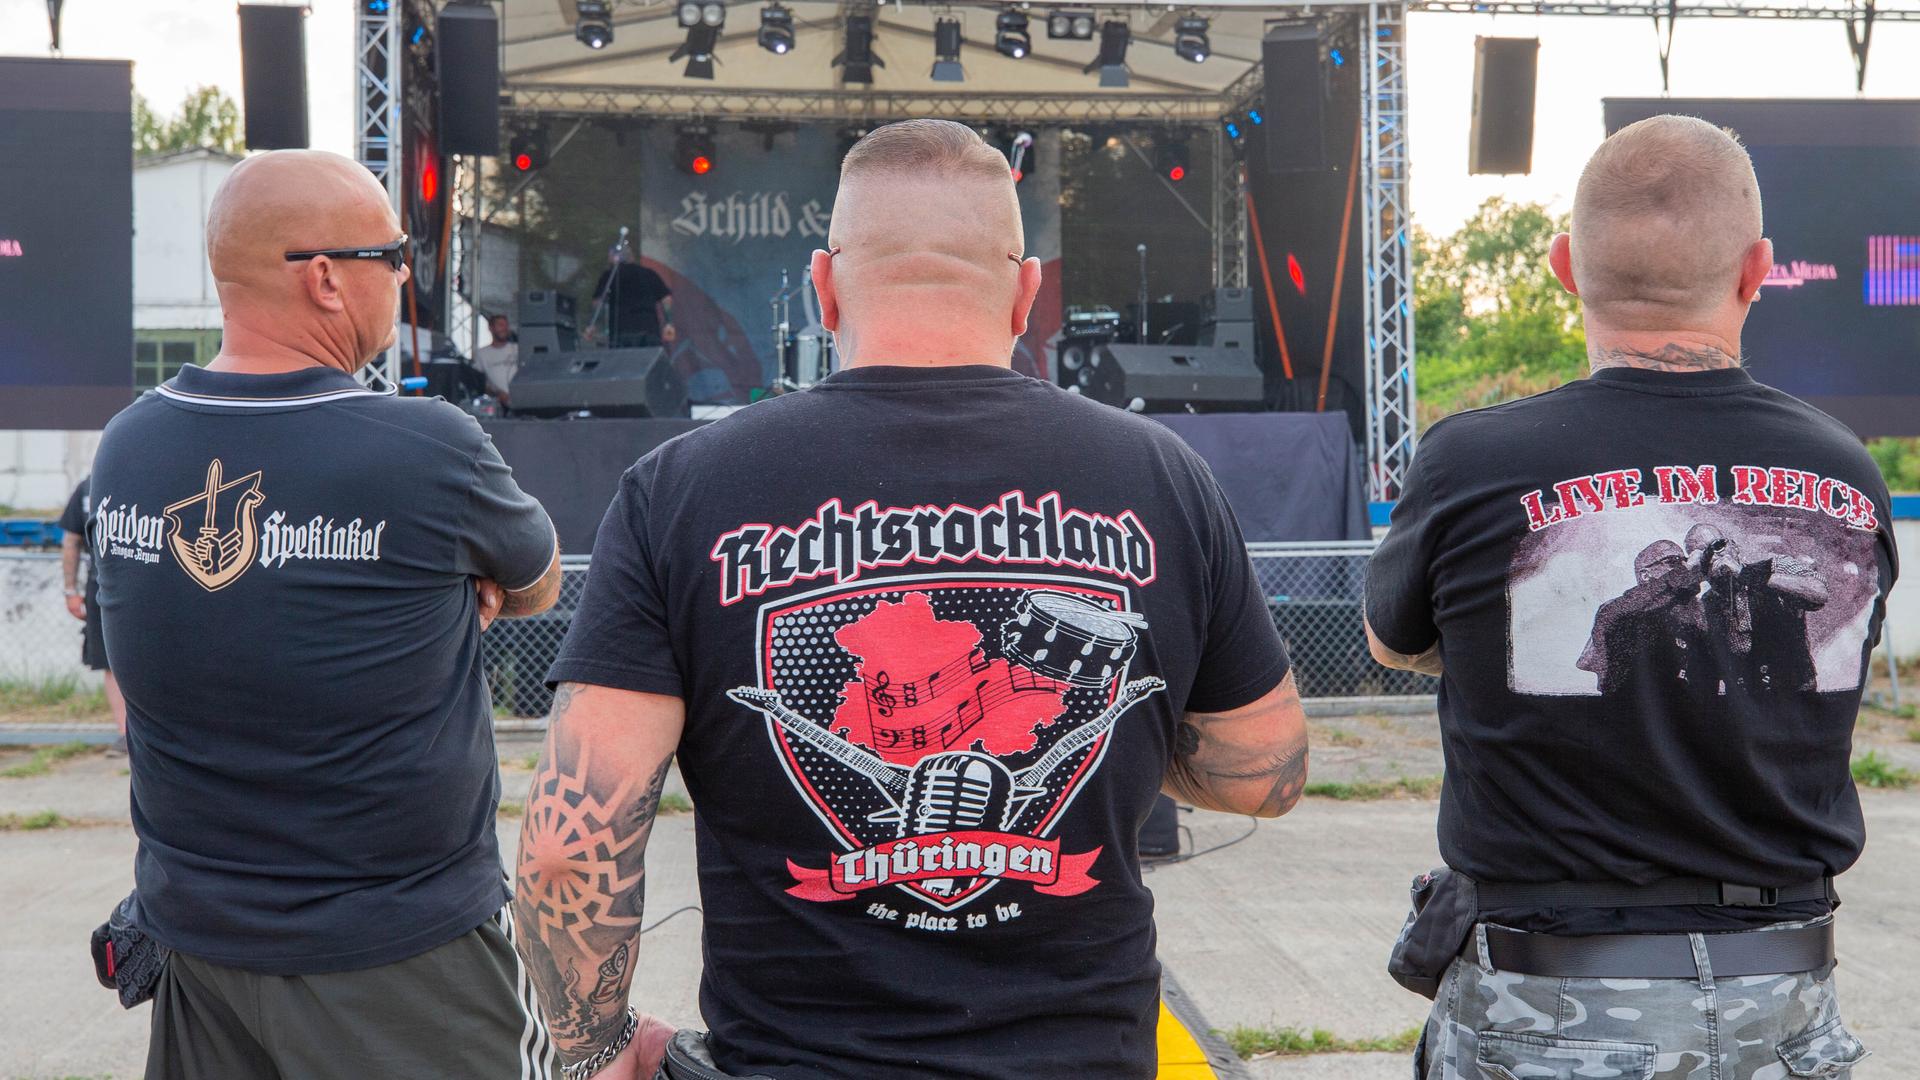 Drei Männer stehen auf dem Areal des "Schild und Schwert" Festival in T-Shirts mit den Aufdrucken Rechtsrockland (M) und "LIVE IM REICH" (r). Auf dem Festival treten rechtsextreme Bands auf.